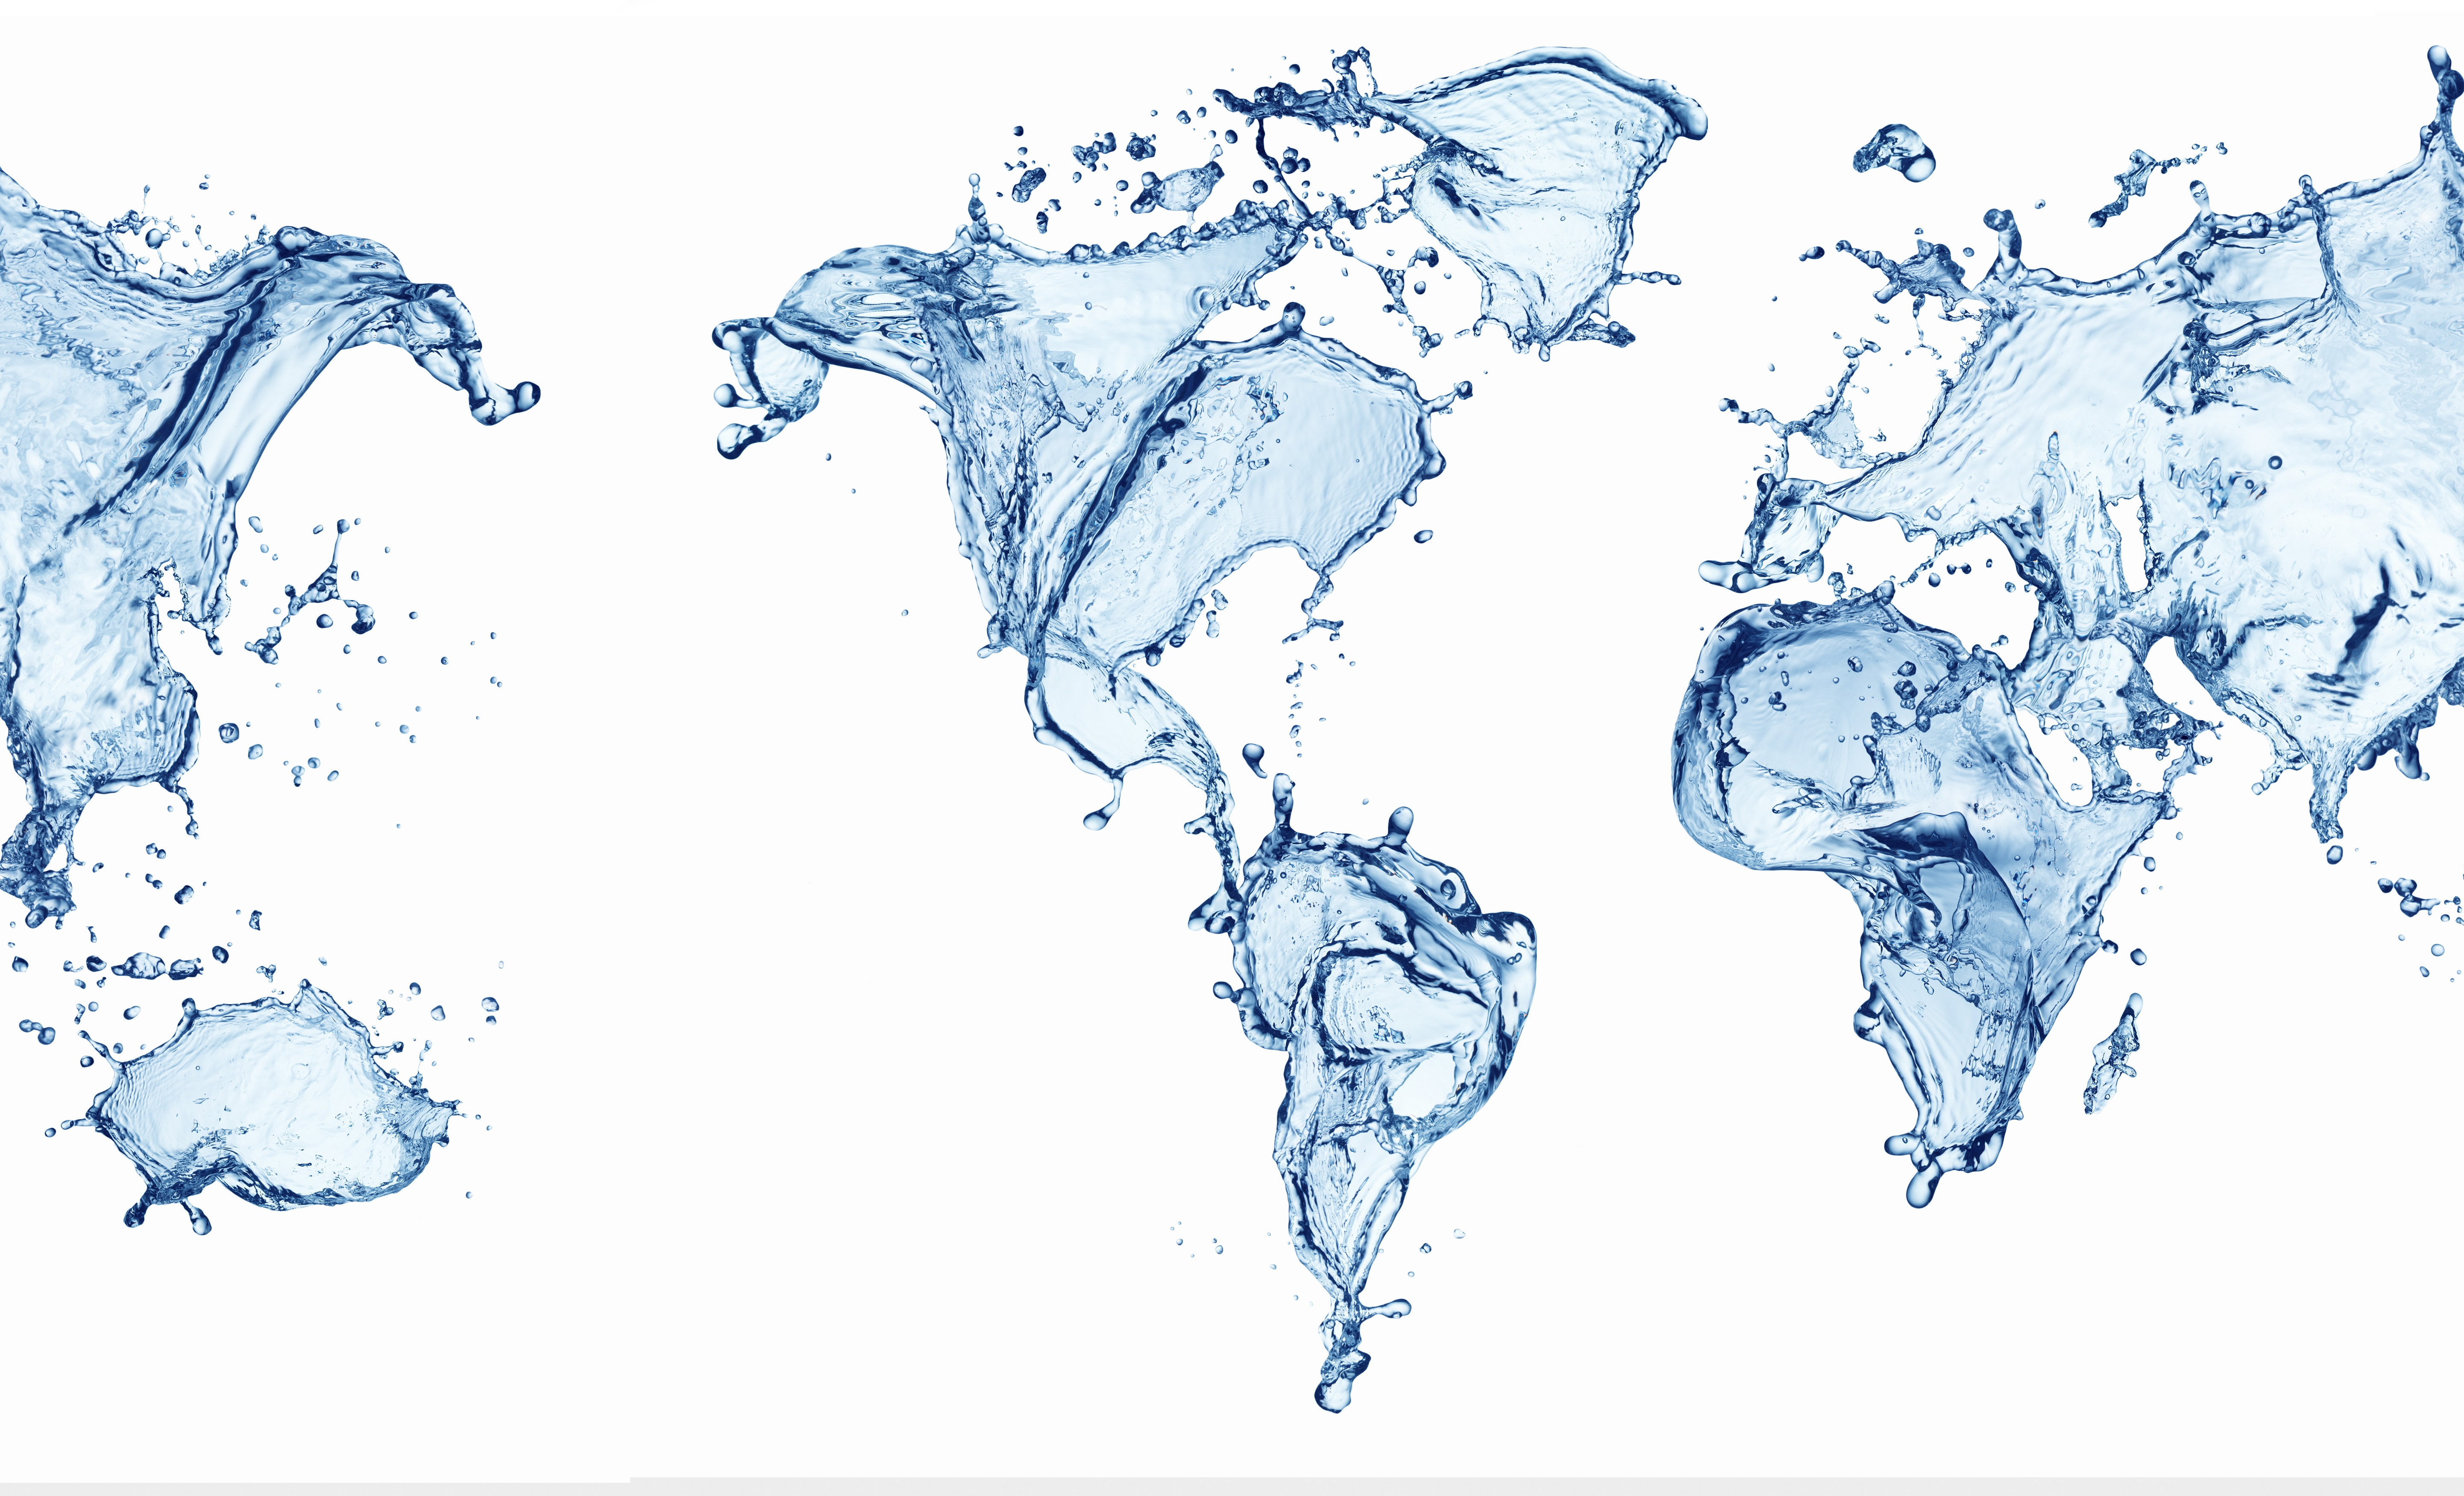 всплекси воды в виде карты мира, скачать фото, вода, текстура, water world map background texture